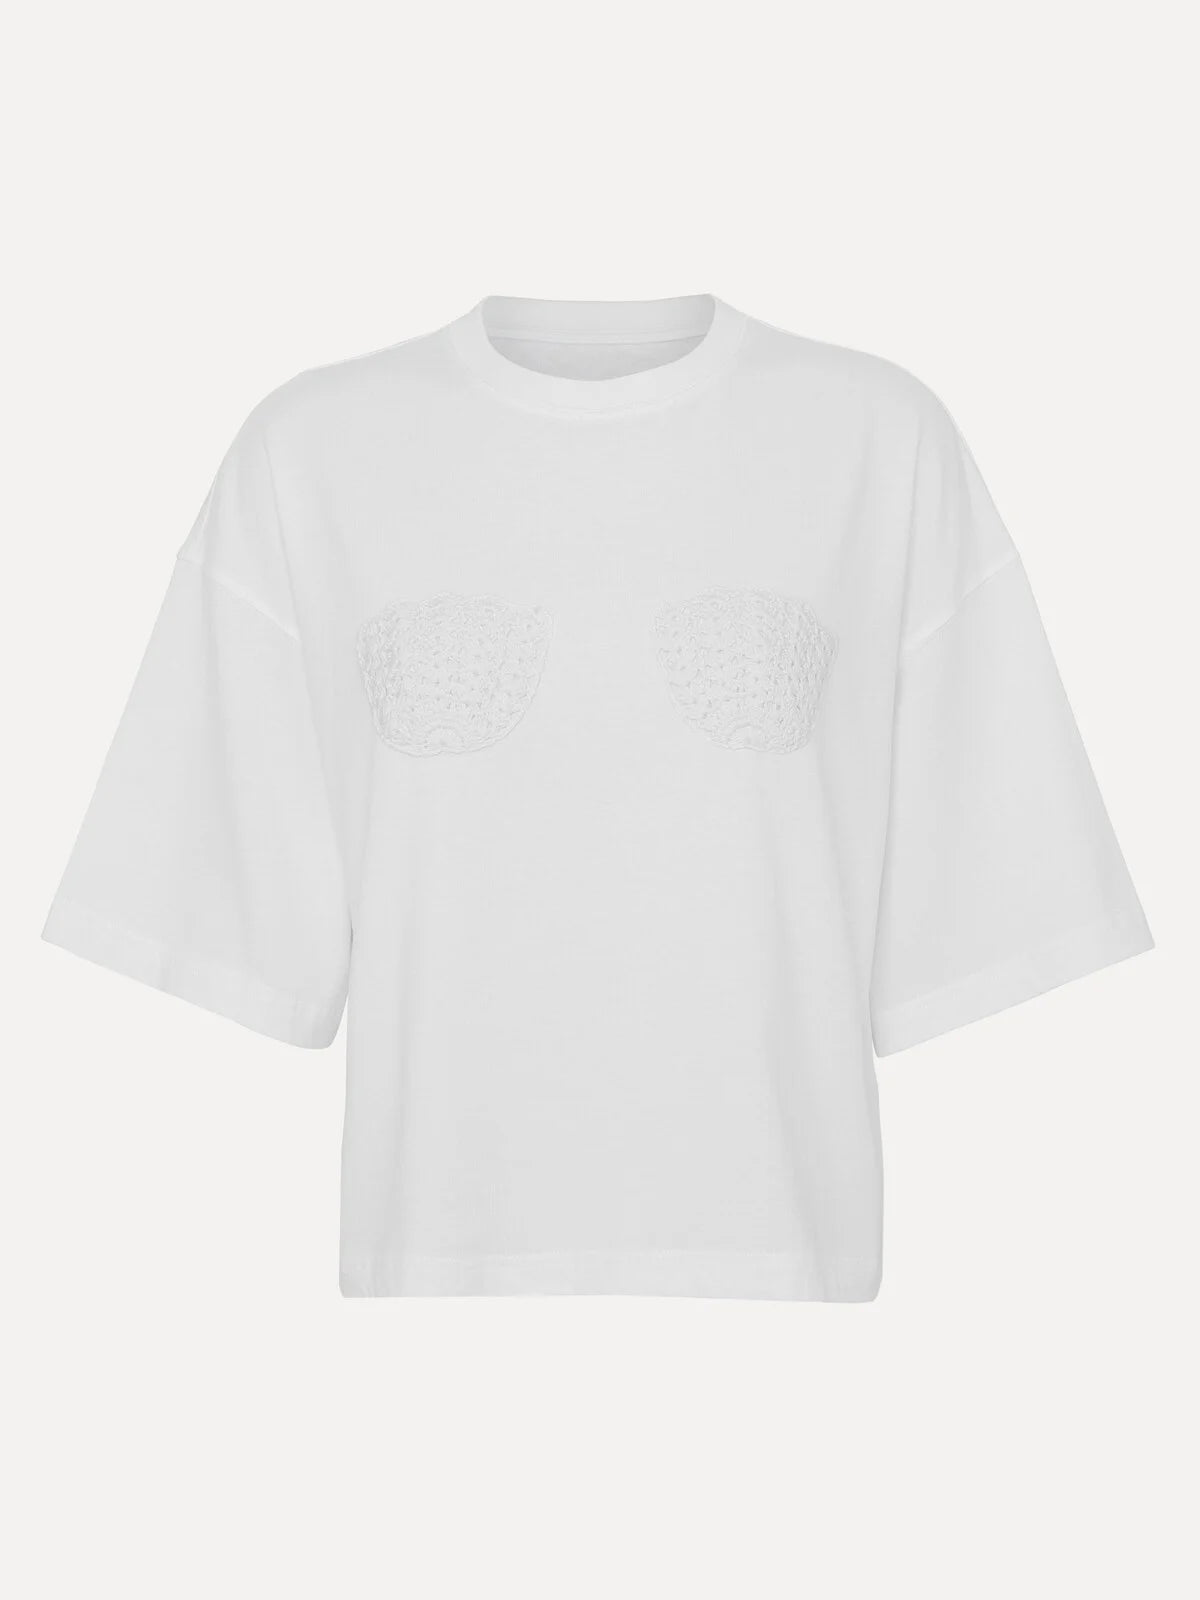 METTE Crochet T-shirt WHITE